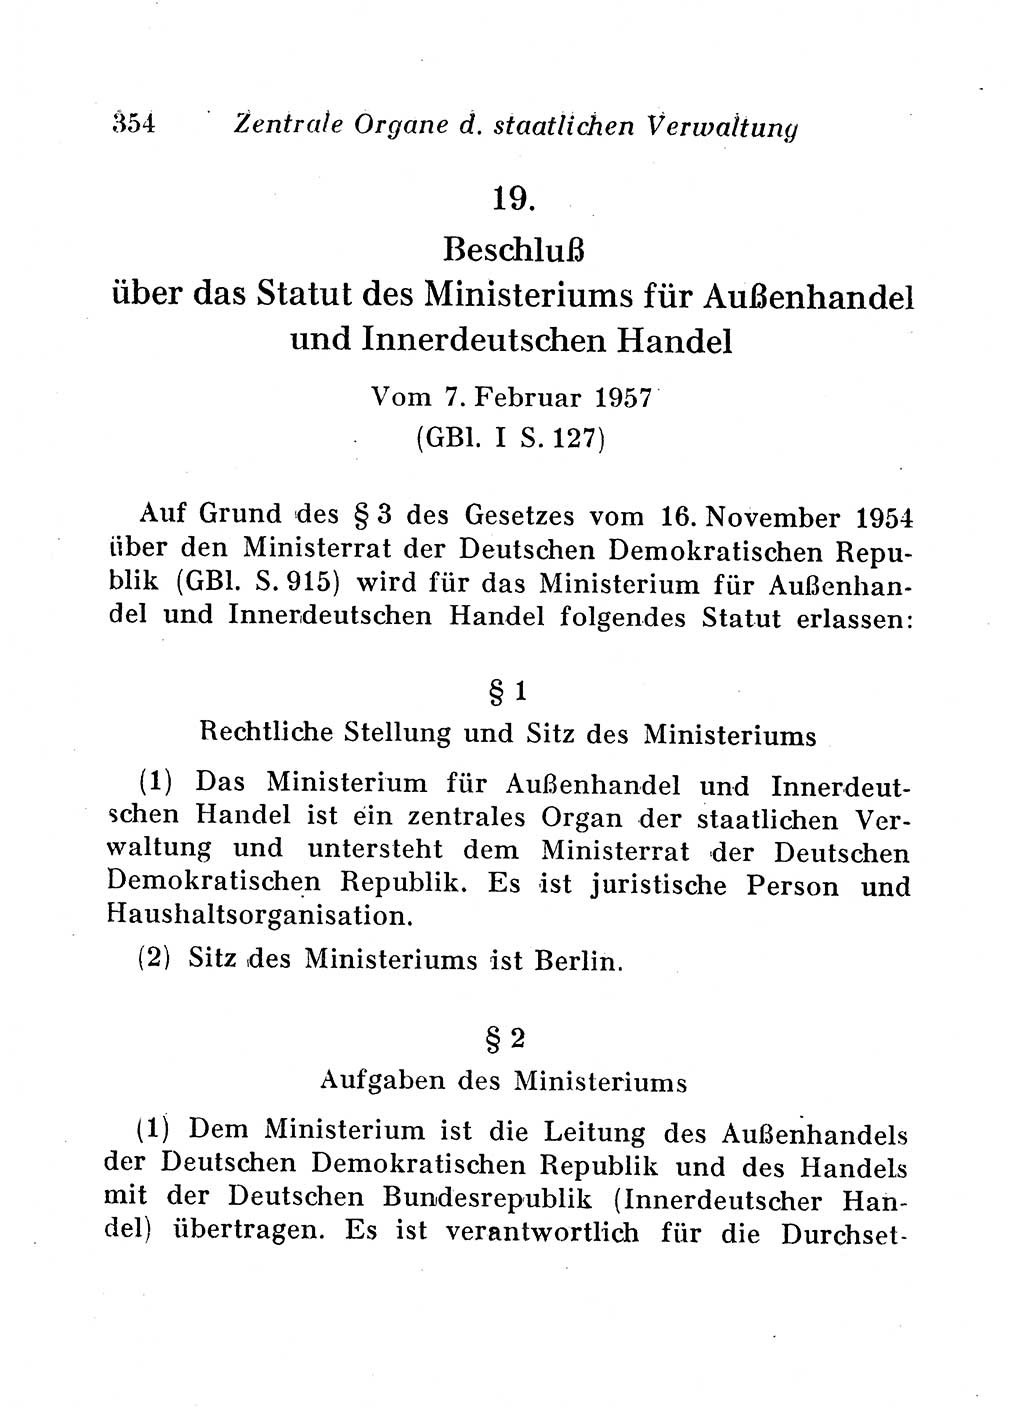 Staats- und verwaltungsrechtliche Gesetze der Deutschen Demokratischen Republik (DDR) 1958, Seite 354 (StVerwR Ges. DDR 1958, S. 354)